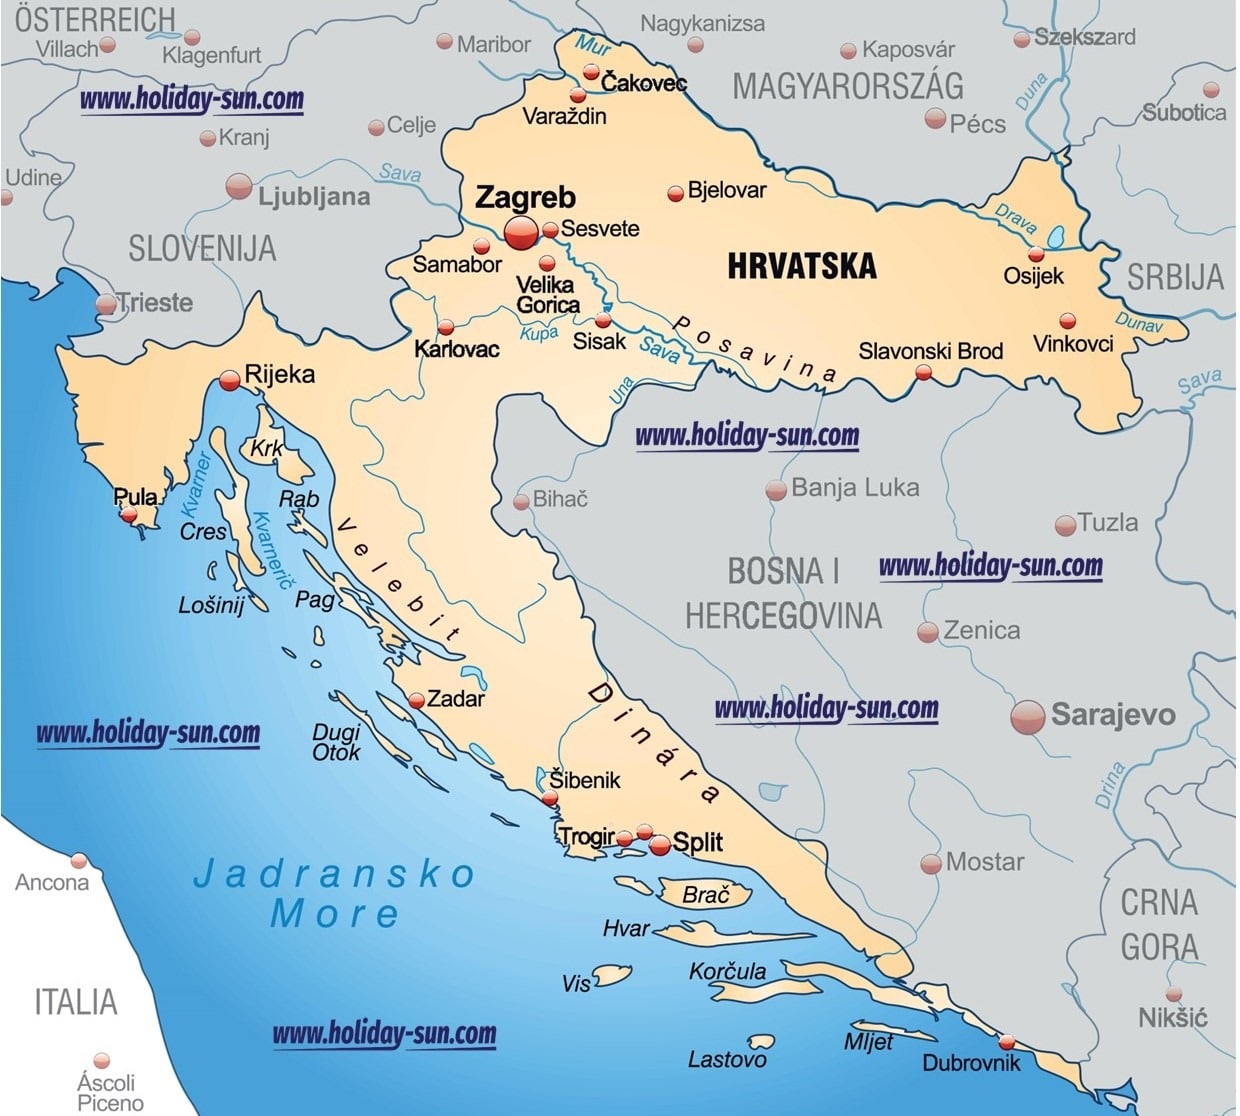 Kroatien Karte